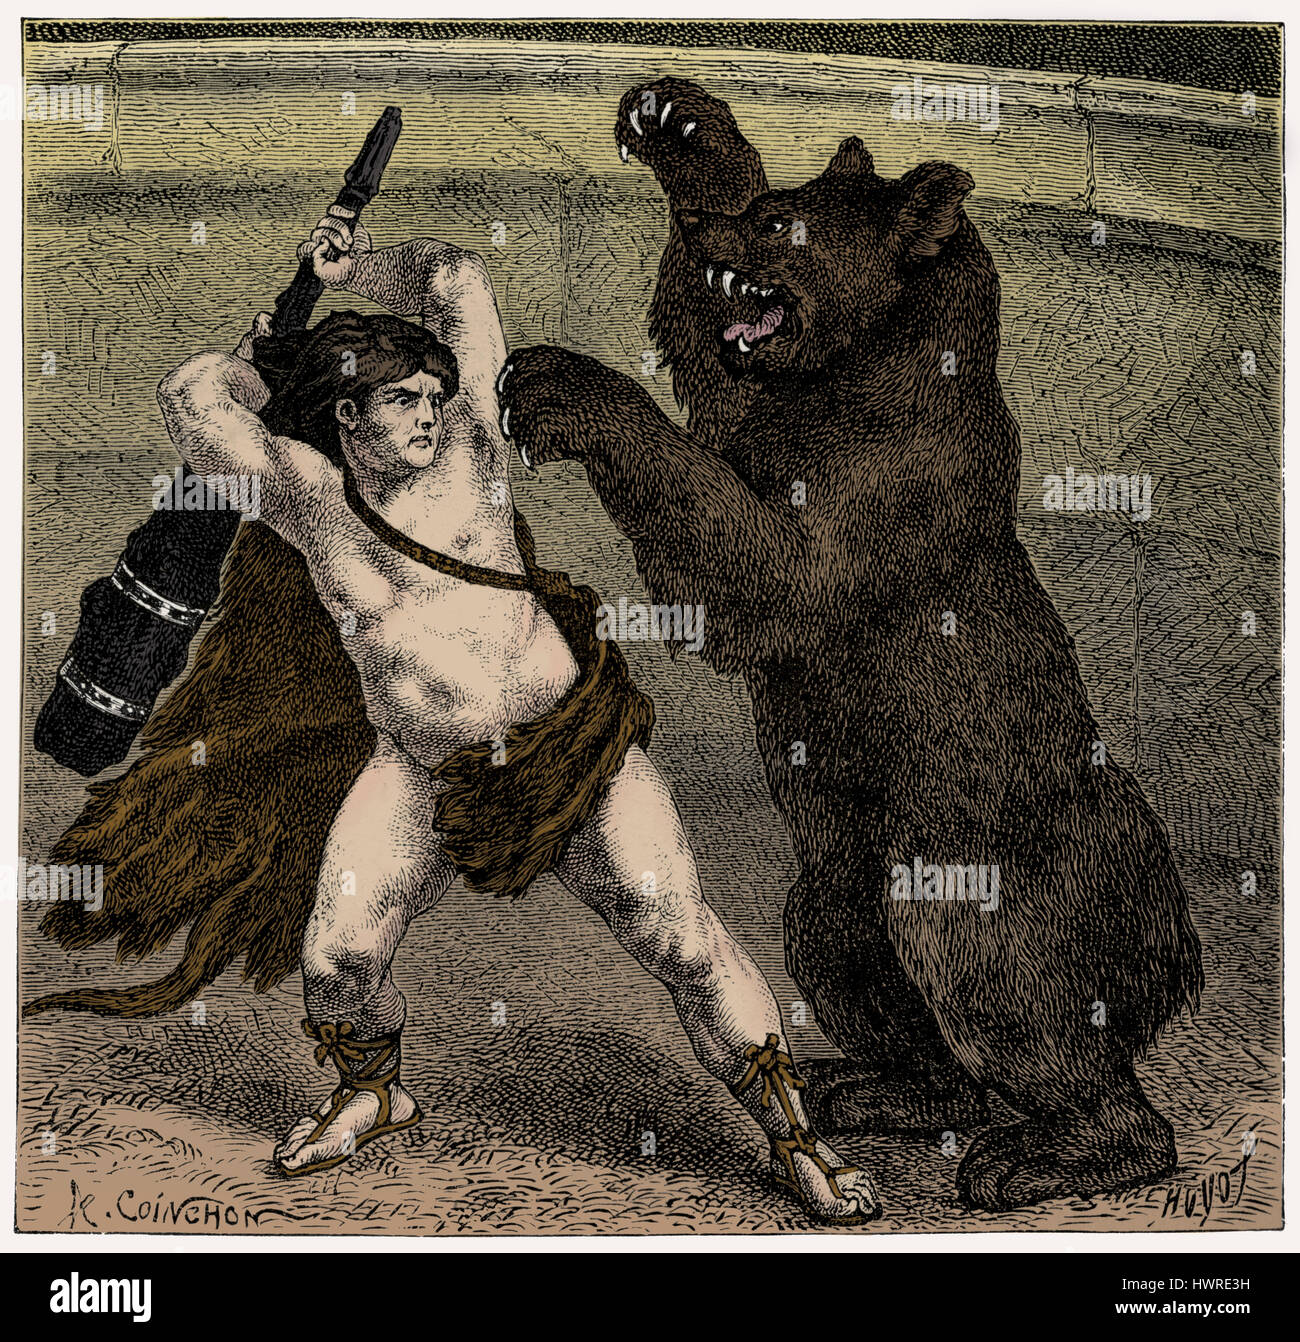 Römischen Circus. Empero Lucius Aurelius Commodus in seinem Personna als Herkules kämpft Bea mit einem schweren Weaponr. Stockfoto